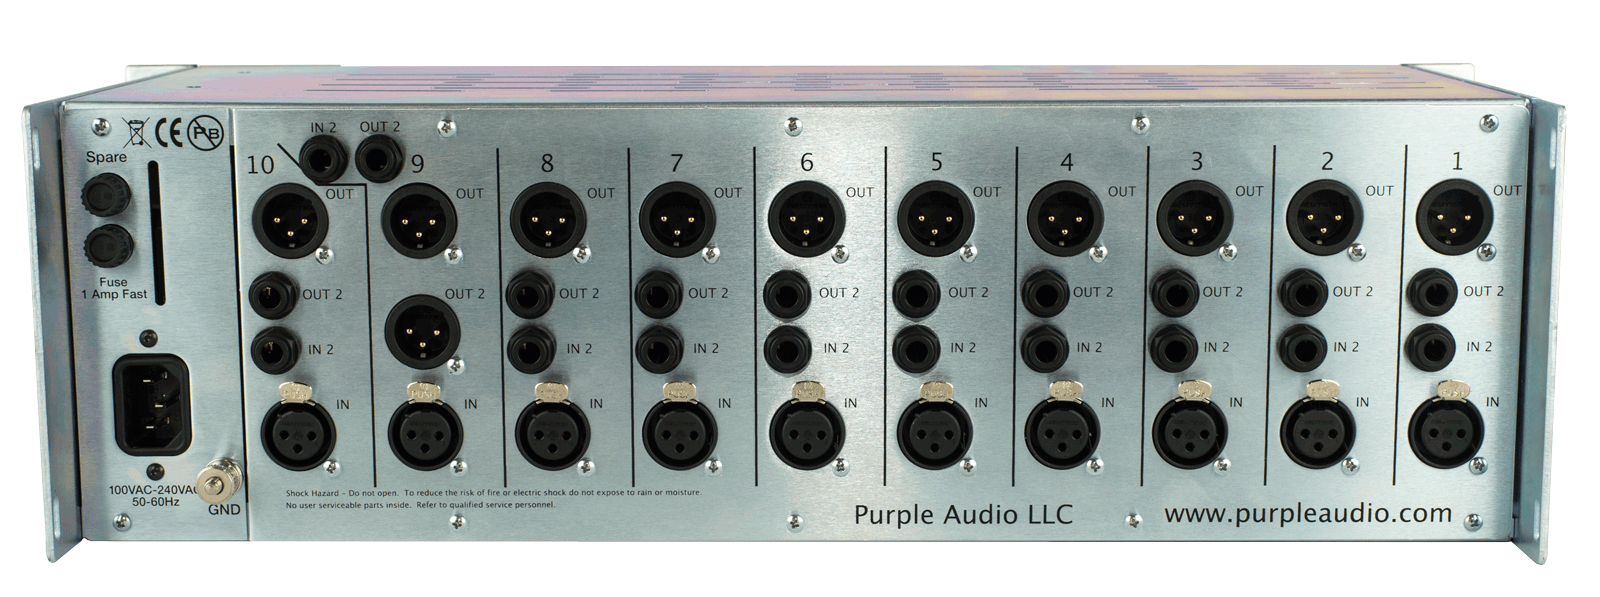 Purple Audio Sweet Ten Rack - Rack Studio - Variation 3